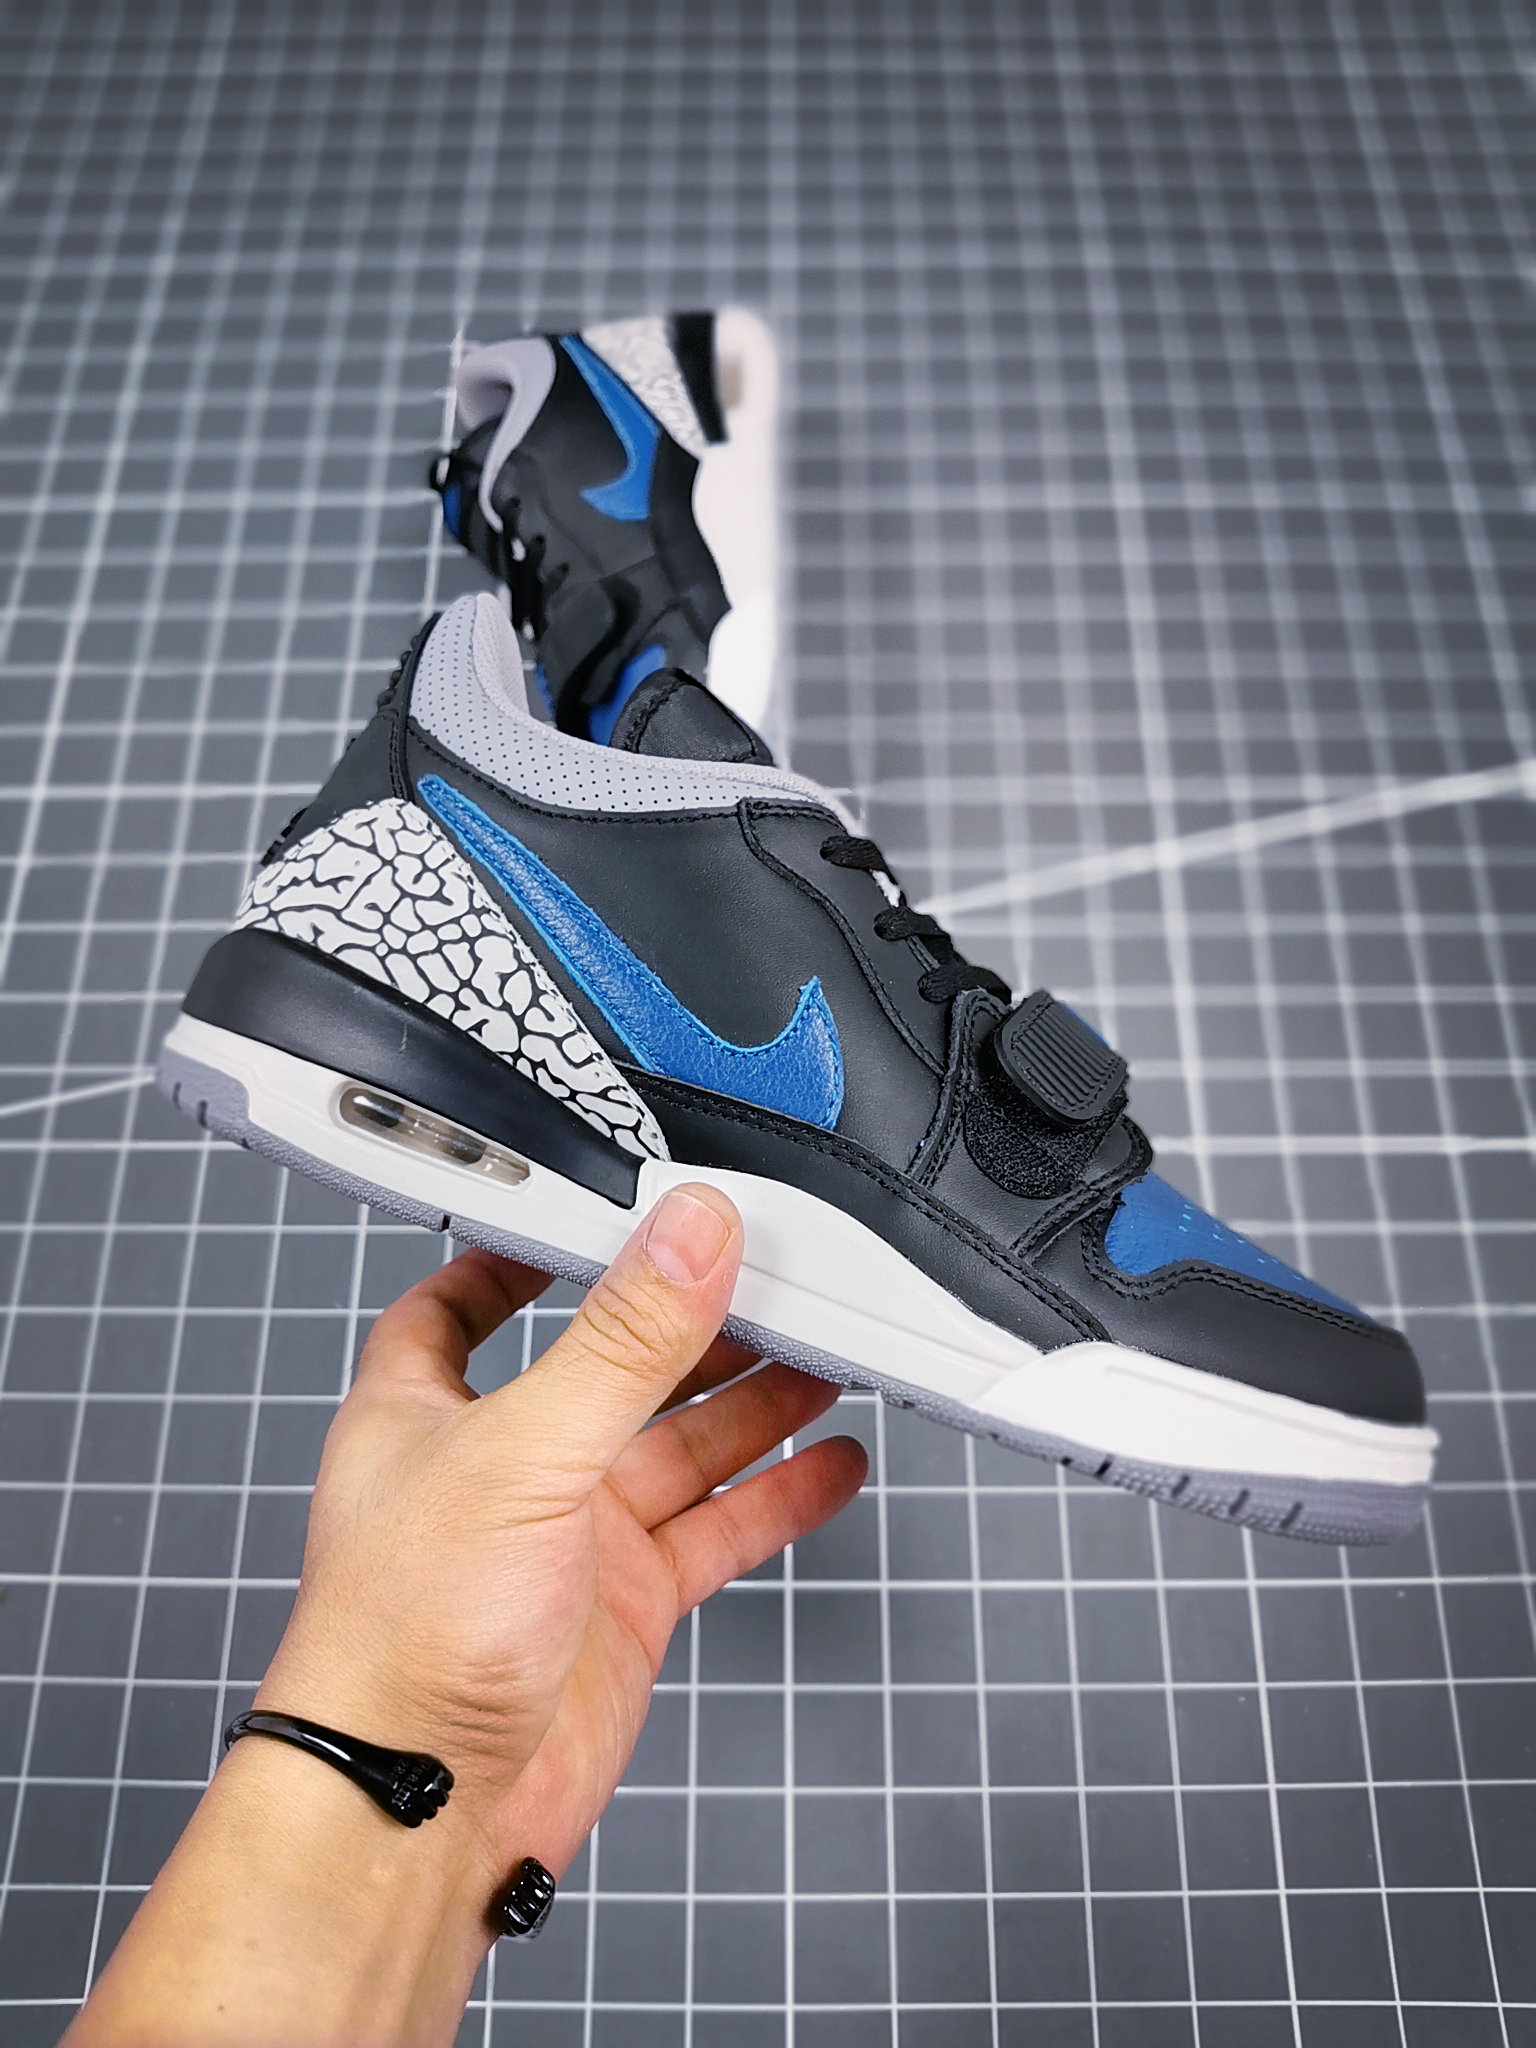 2021 Jordan Legacy 312 Low Black Cement Blue Shoes